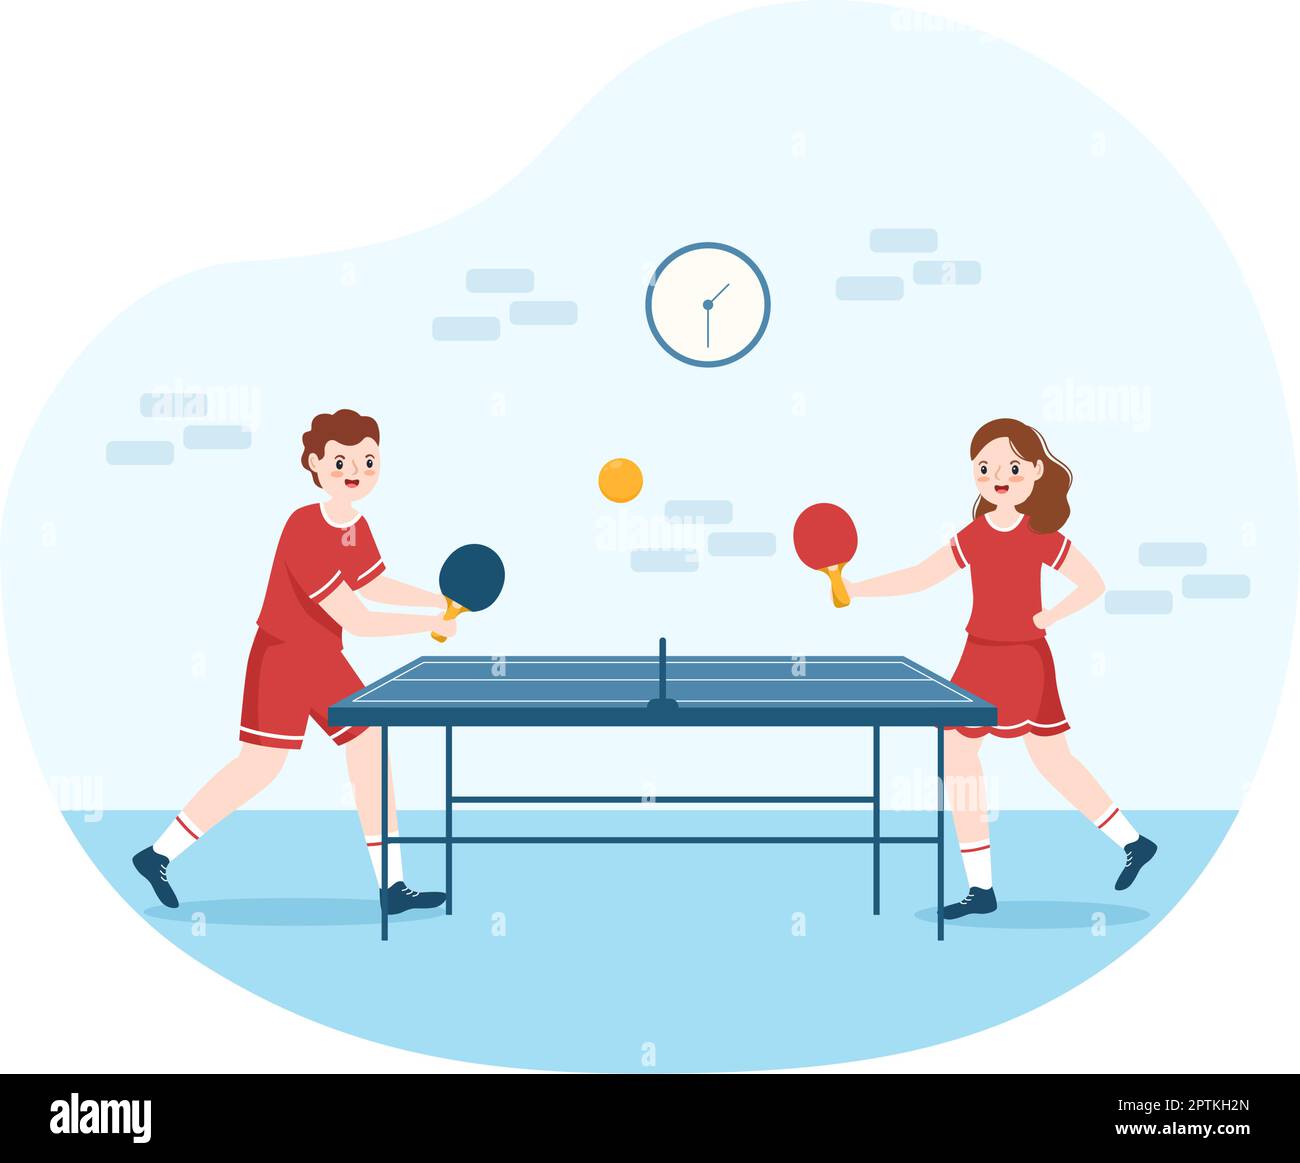 Les gens qui jouent au tennis de table Sports avec raquette et balle de ping -pong jeu match dans le dessin-modèle de dessin main de dessin-modèle Image  Vectorielle Stock - Alamy